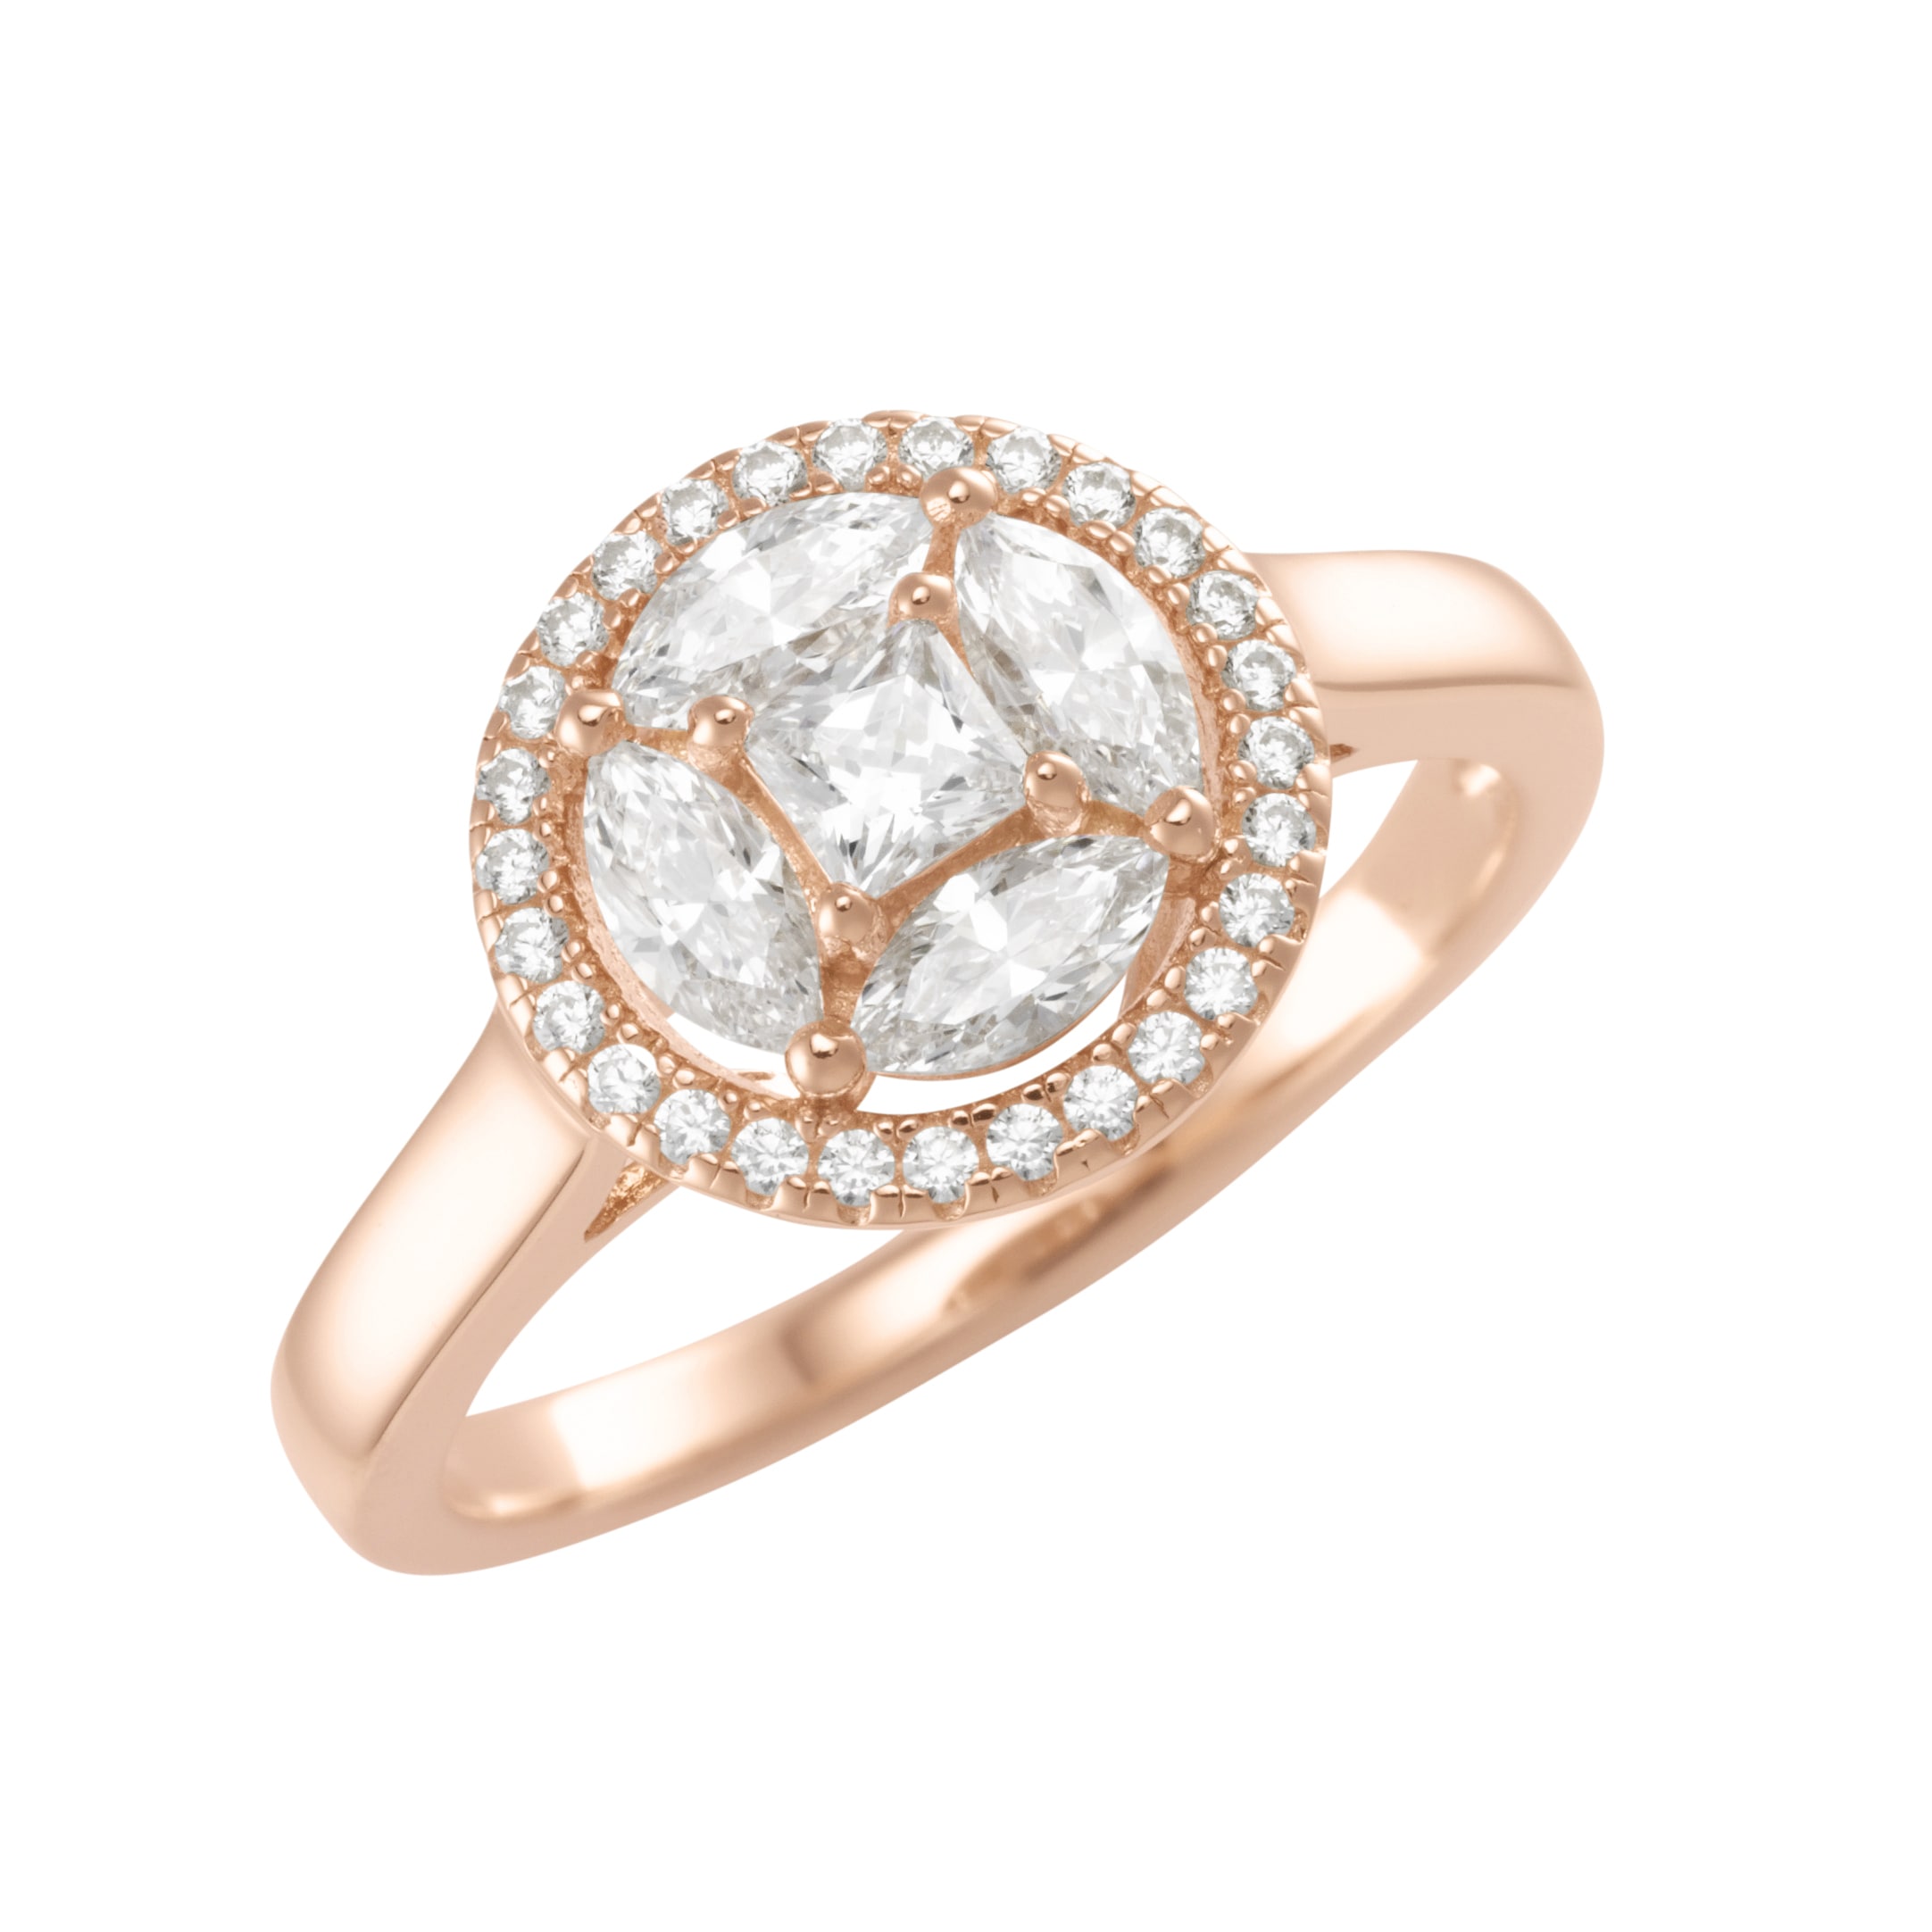 Silberring »Ring mit weißen Zirkonia Steinen, rosé vergoldet, Silber 925«